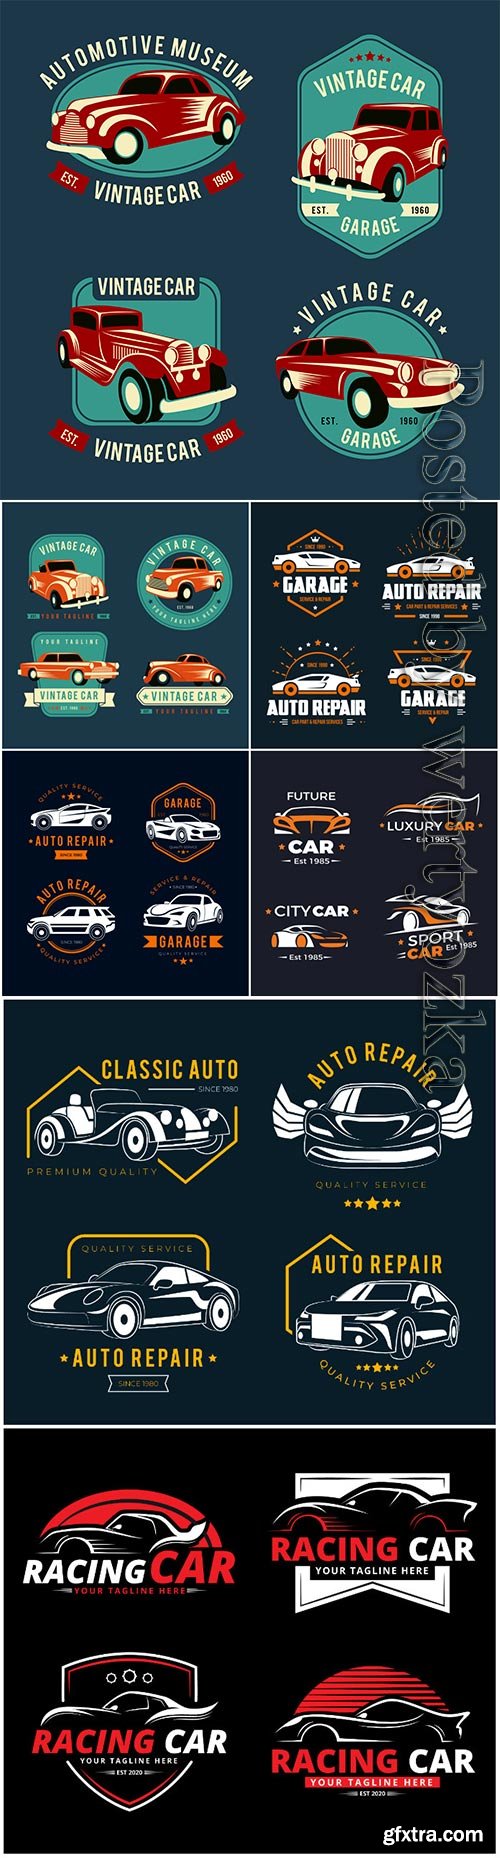 Flat design car logo vector collection